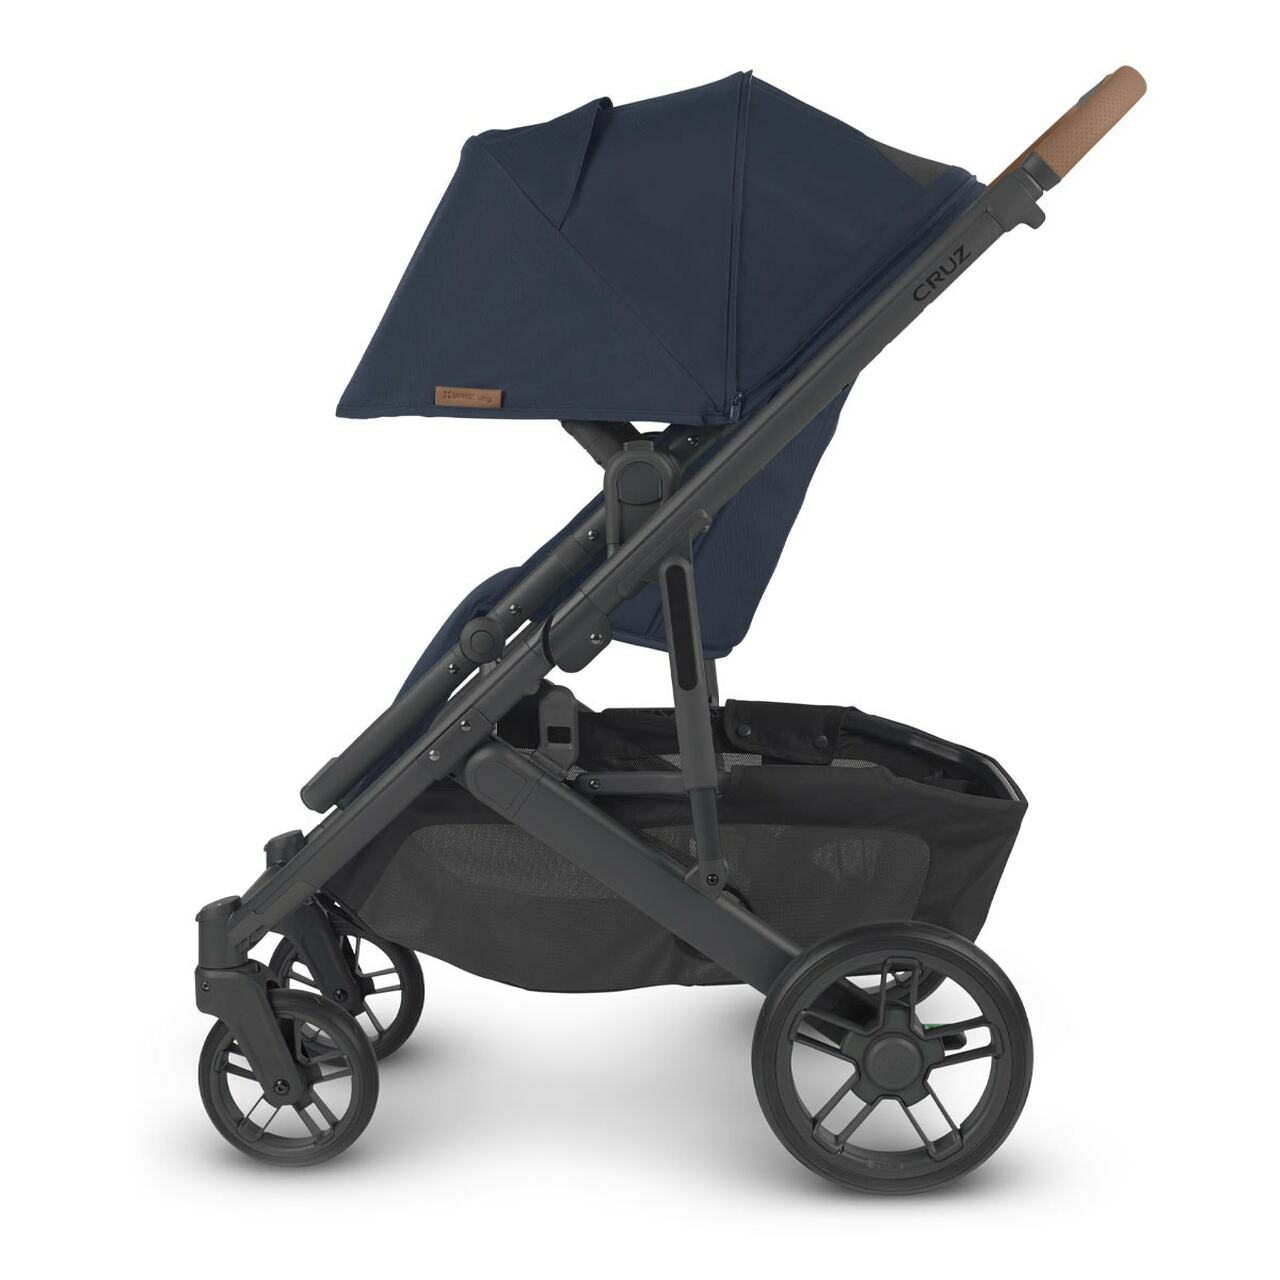 UPPAbaby stroller UPPAbaby CRUZ V2 Stroller - Noa (Navy/Carbon/Saddle Leather)